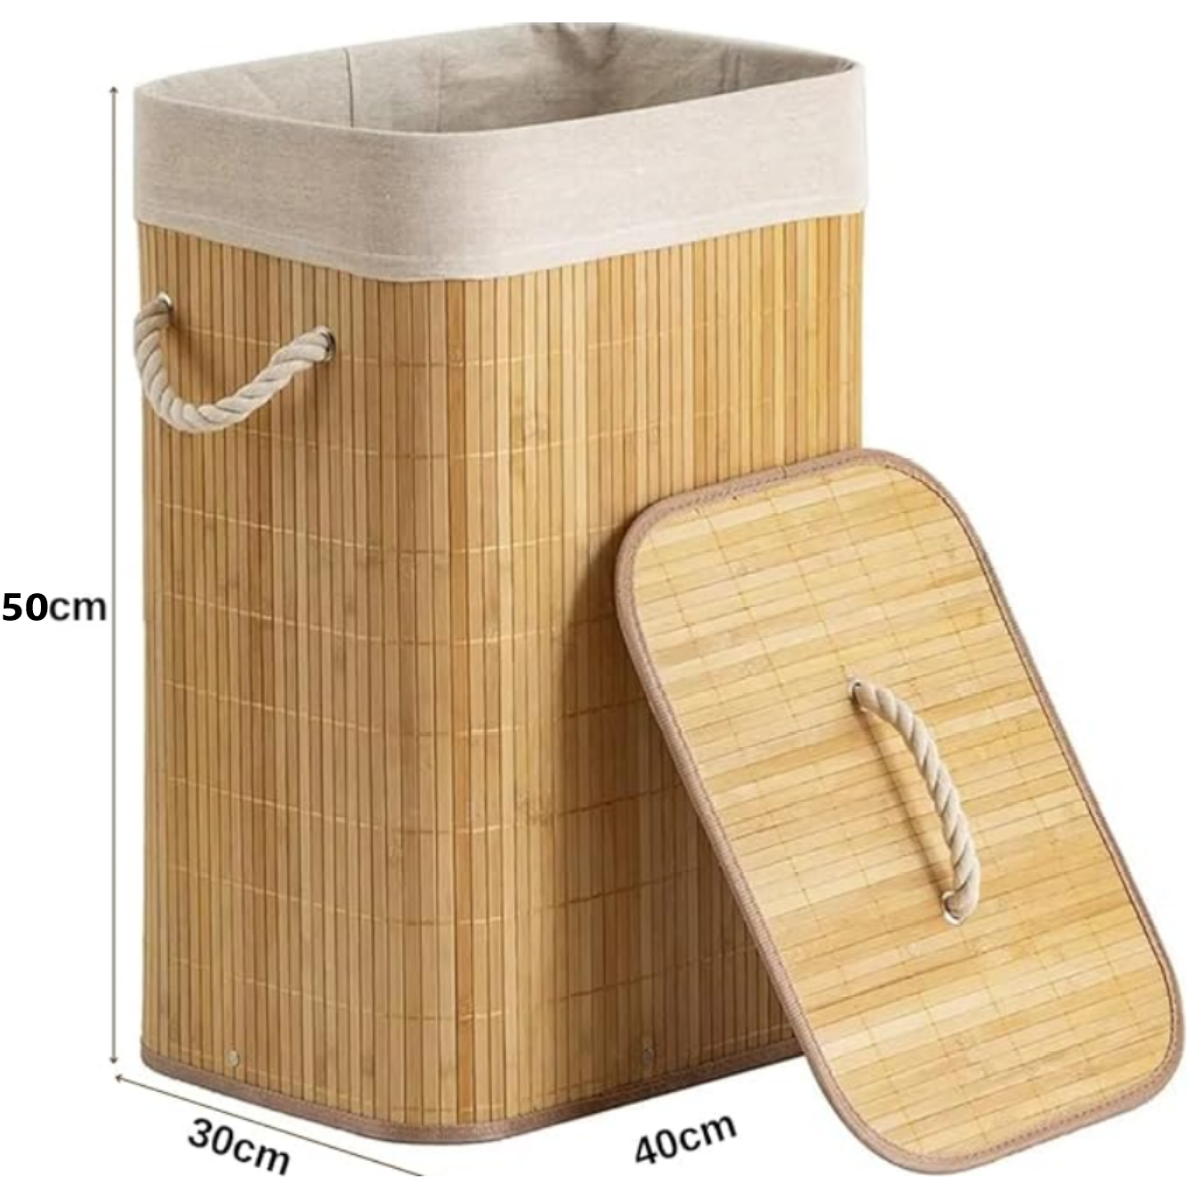 Kit Cestos de Fibra Natural Bambu com Forro Retangular Cesto Forrado Roupa Suja Organização Banheiro - 12